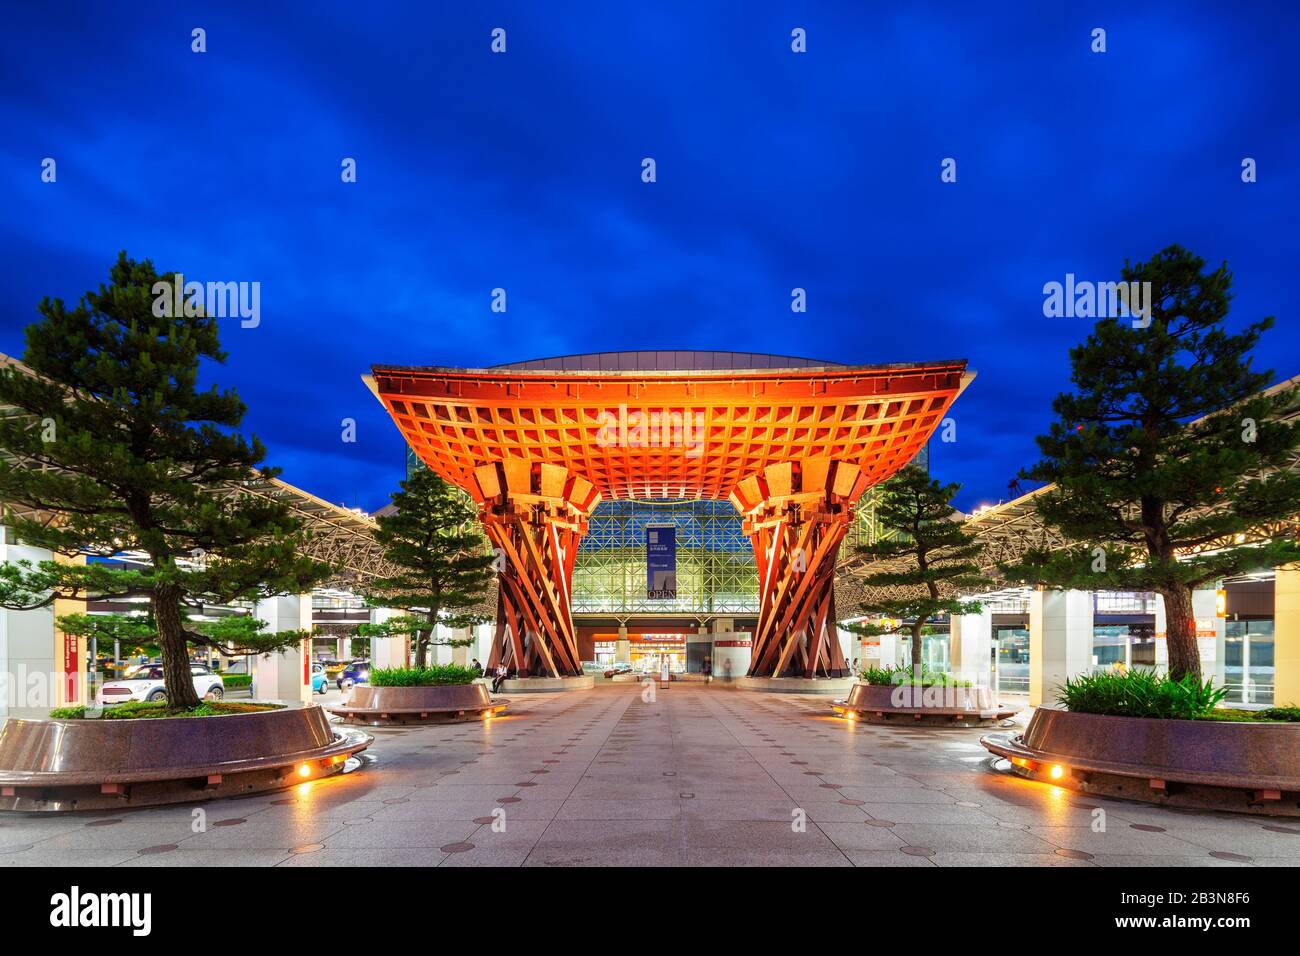 La gare de Kanazawa en forme de torii, conçue par les architectes Sejima et Nishizawa, Kanazawa City, préfecture d'Ishikawa, Honshu, Japon, Asie Banque D'Images